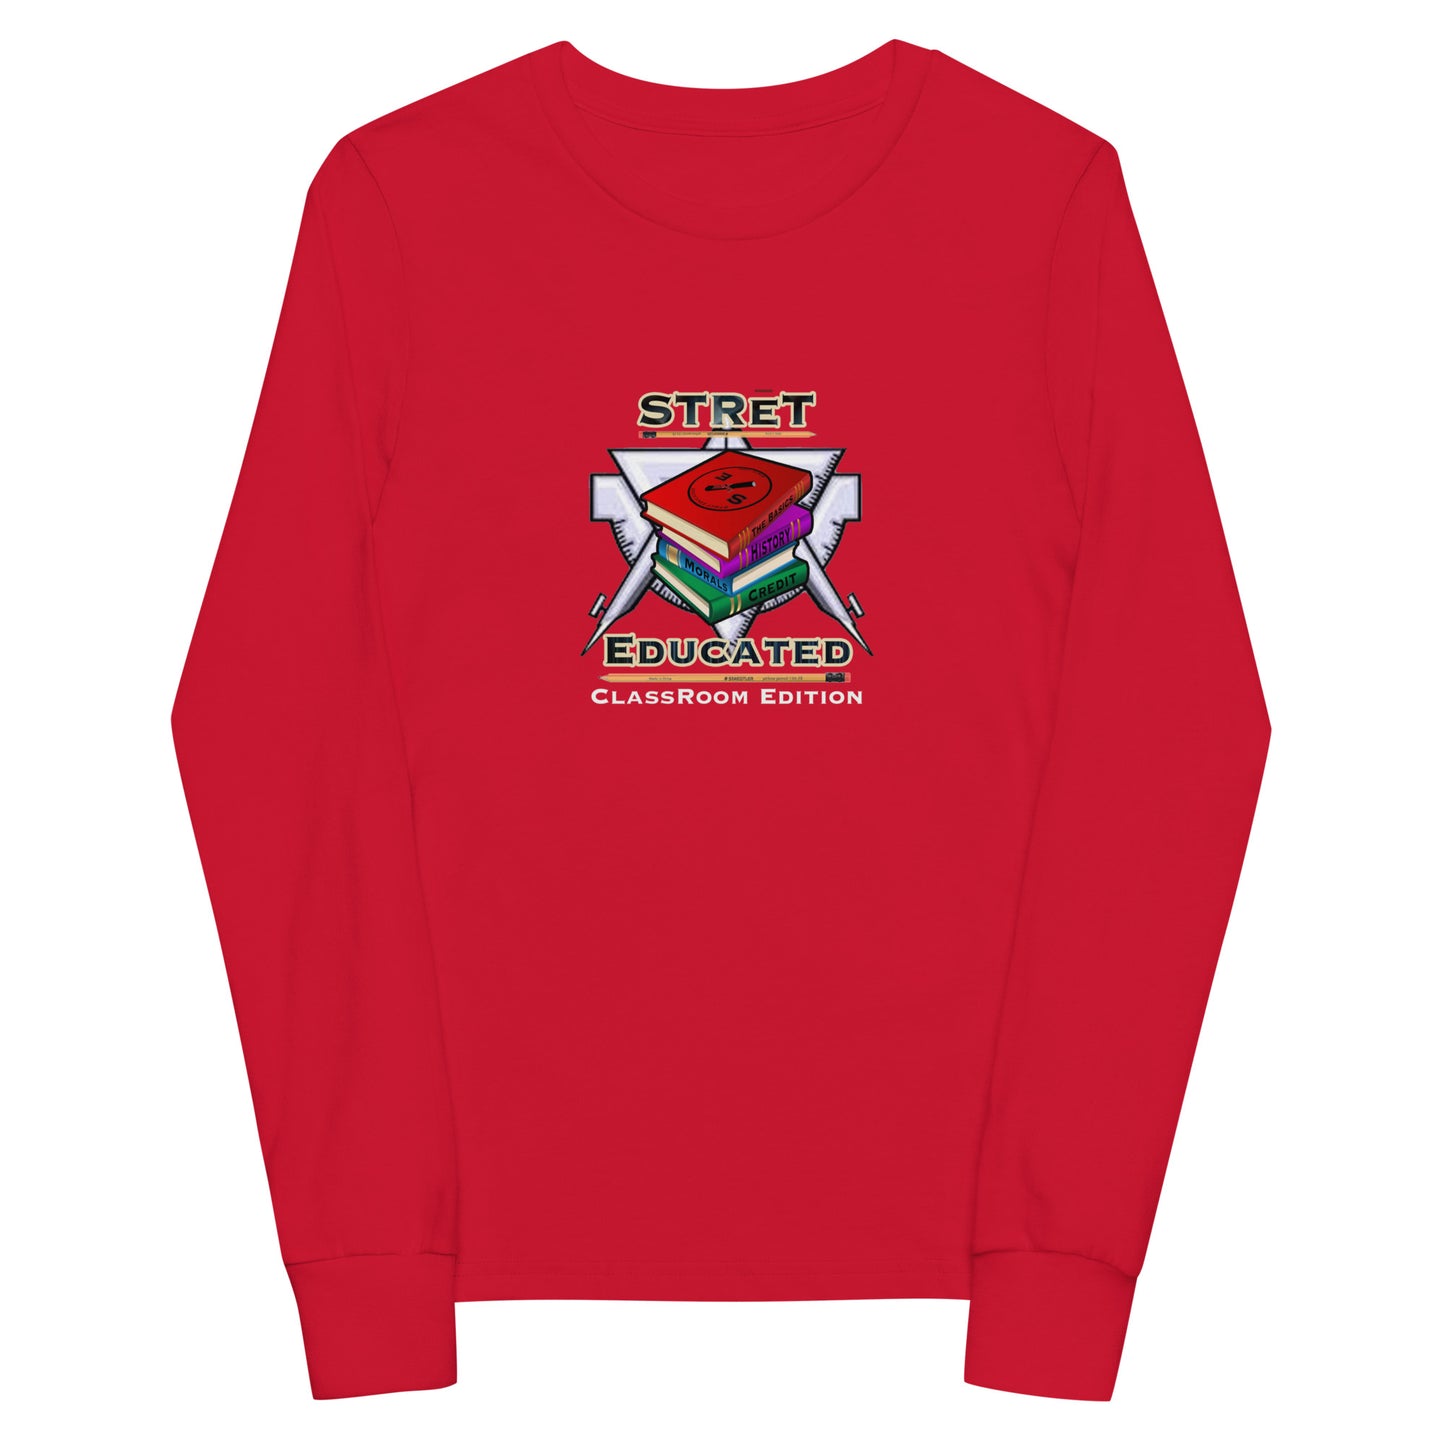 Classroom Edition Youth long sleeve Sweatshirt